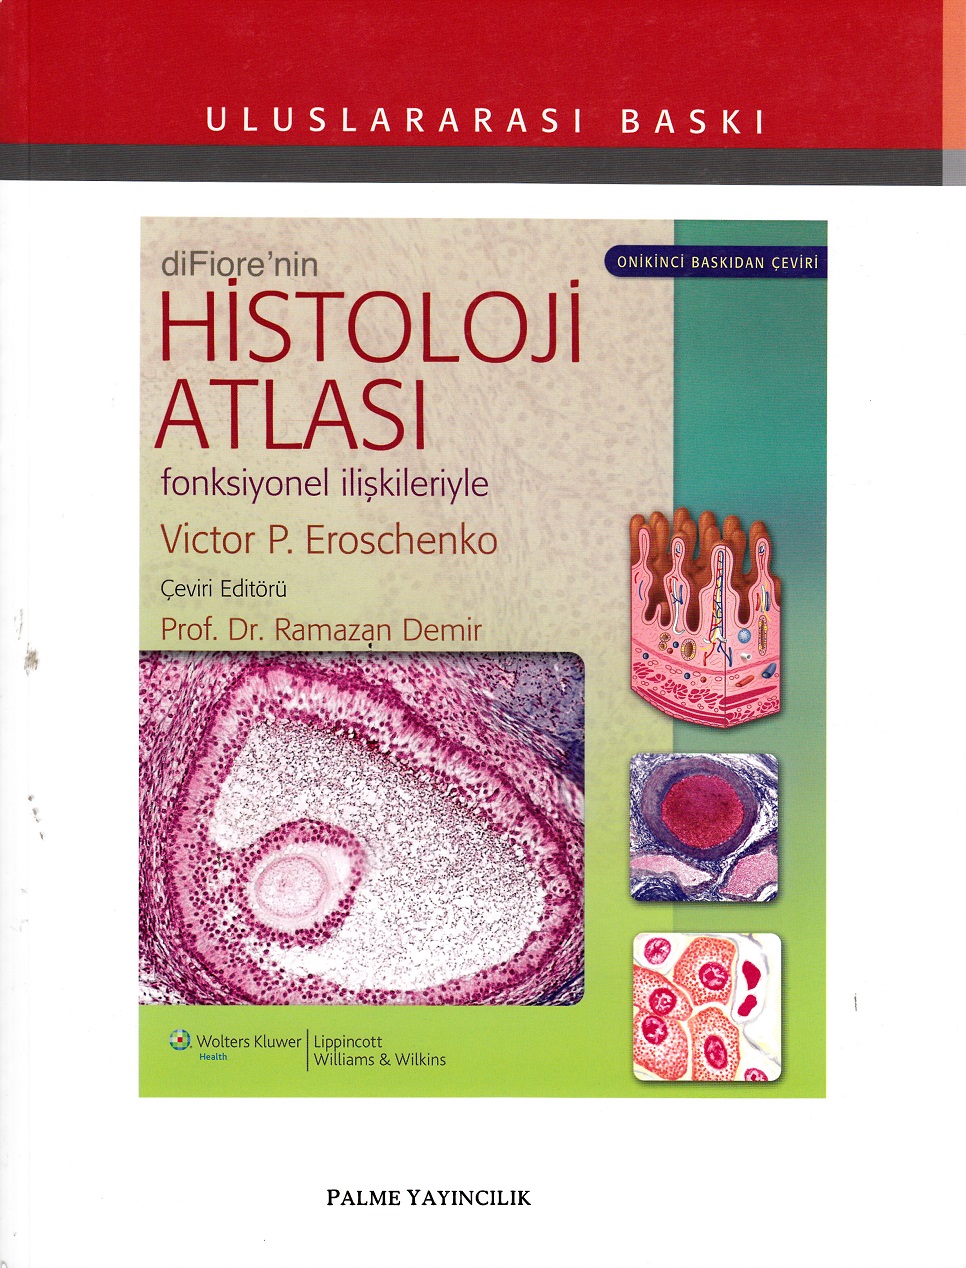 diFiore’nin Histoloji Atlası